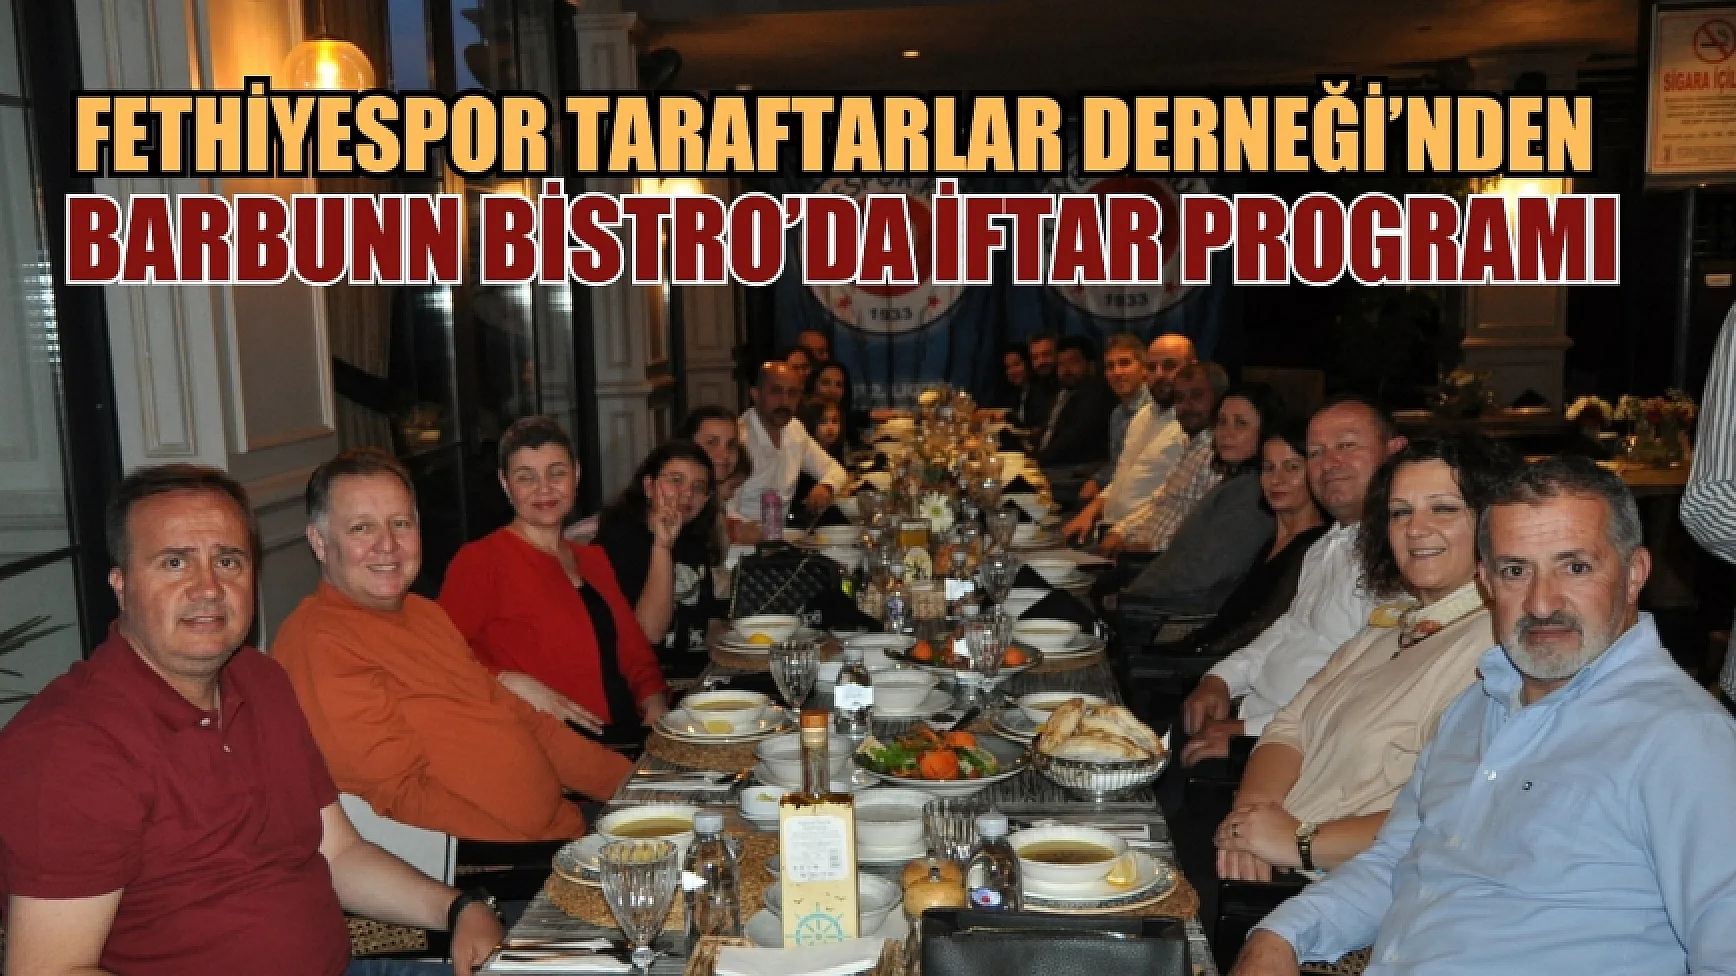 Fethiyespor Taraftarlar Derneği, Barbunn Bistro’da iftar programı düzenledi